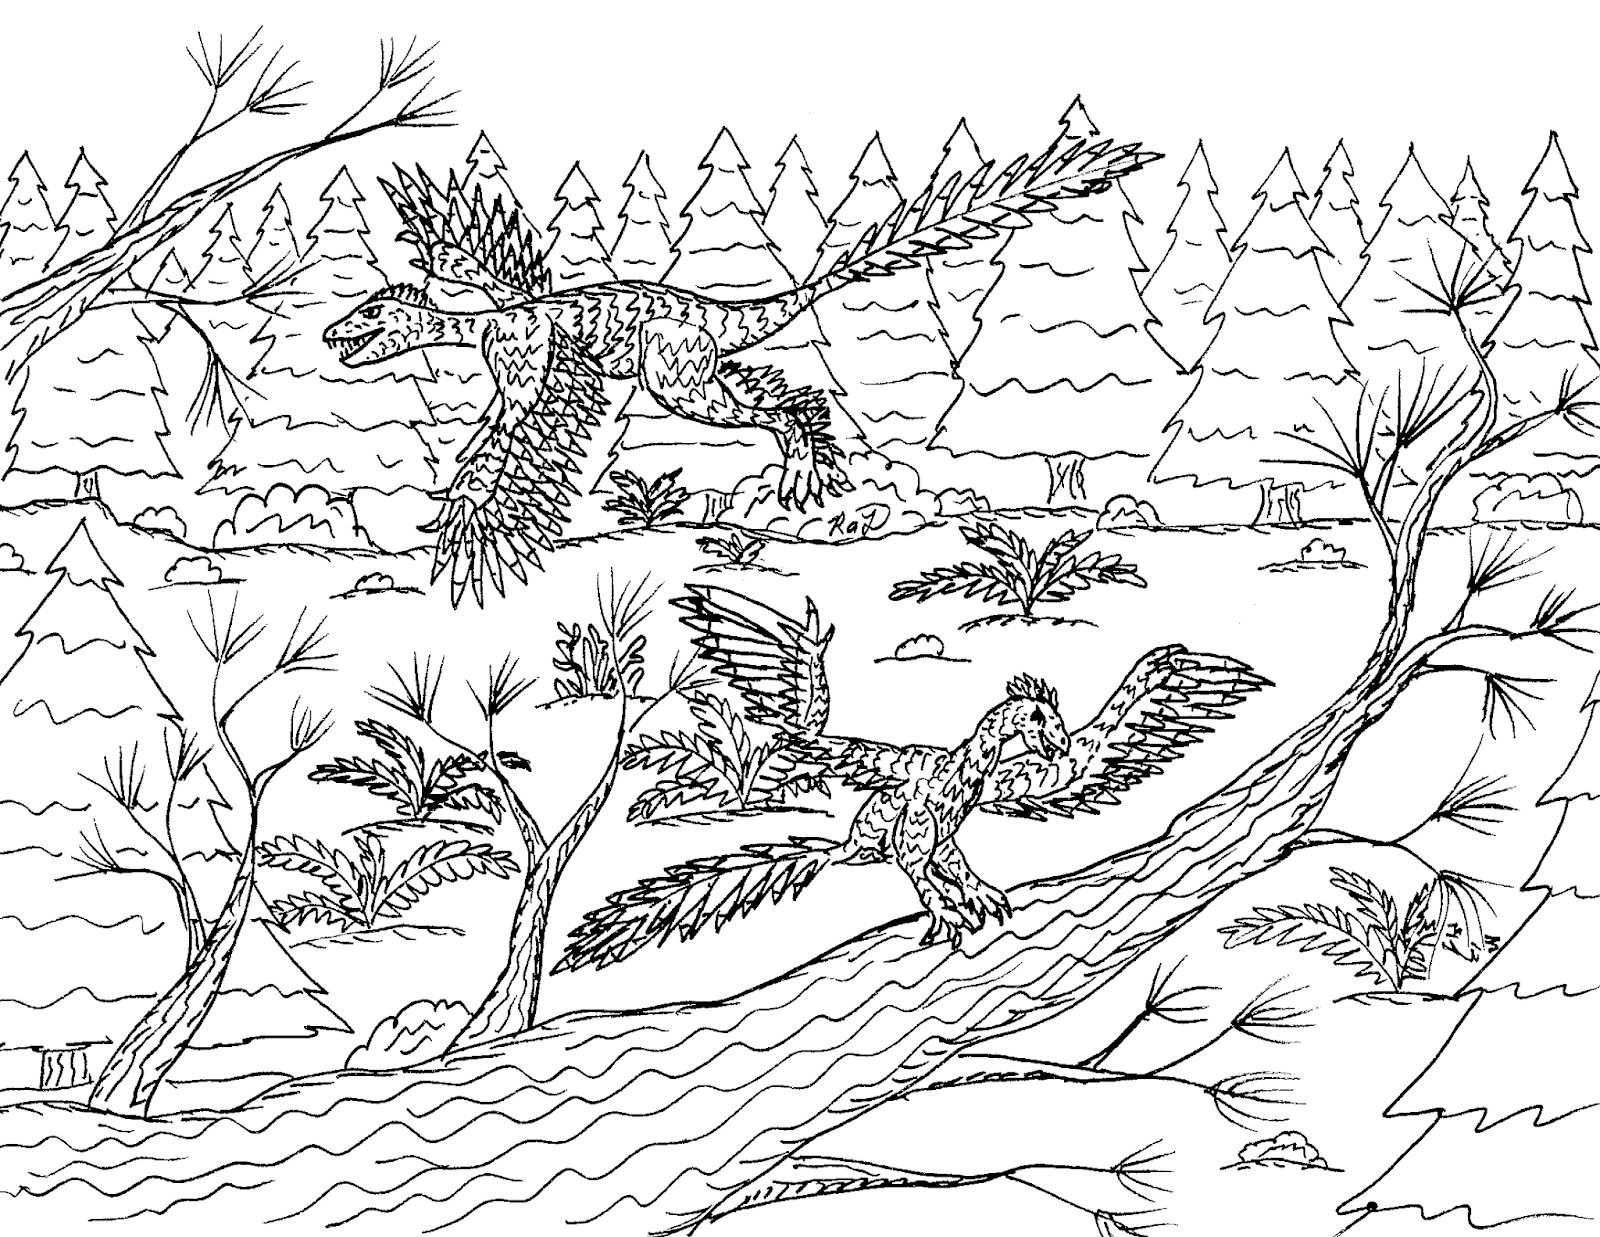 Paire d'archéoptéryx dans la forêt d'Archeopteryx